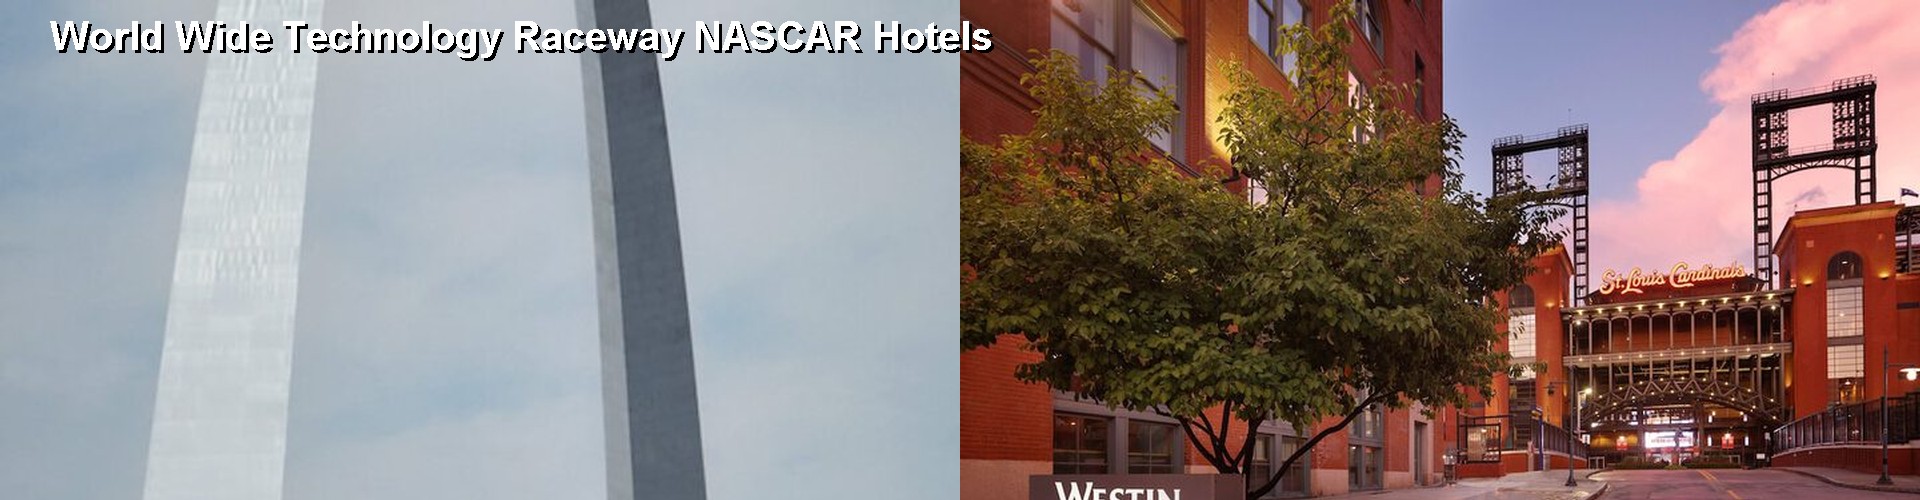 5 Best Hotels near World Wide Technology Raceway NASCAR